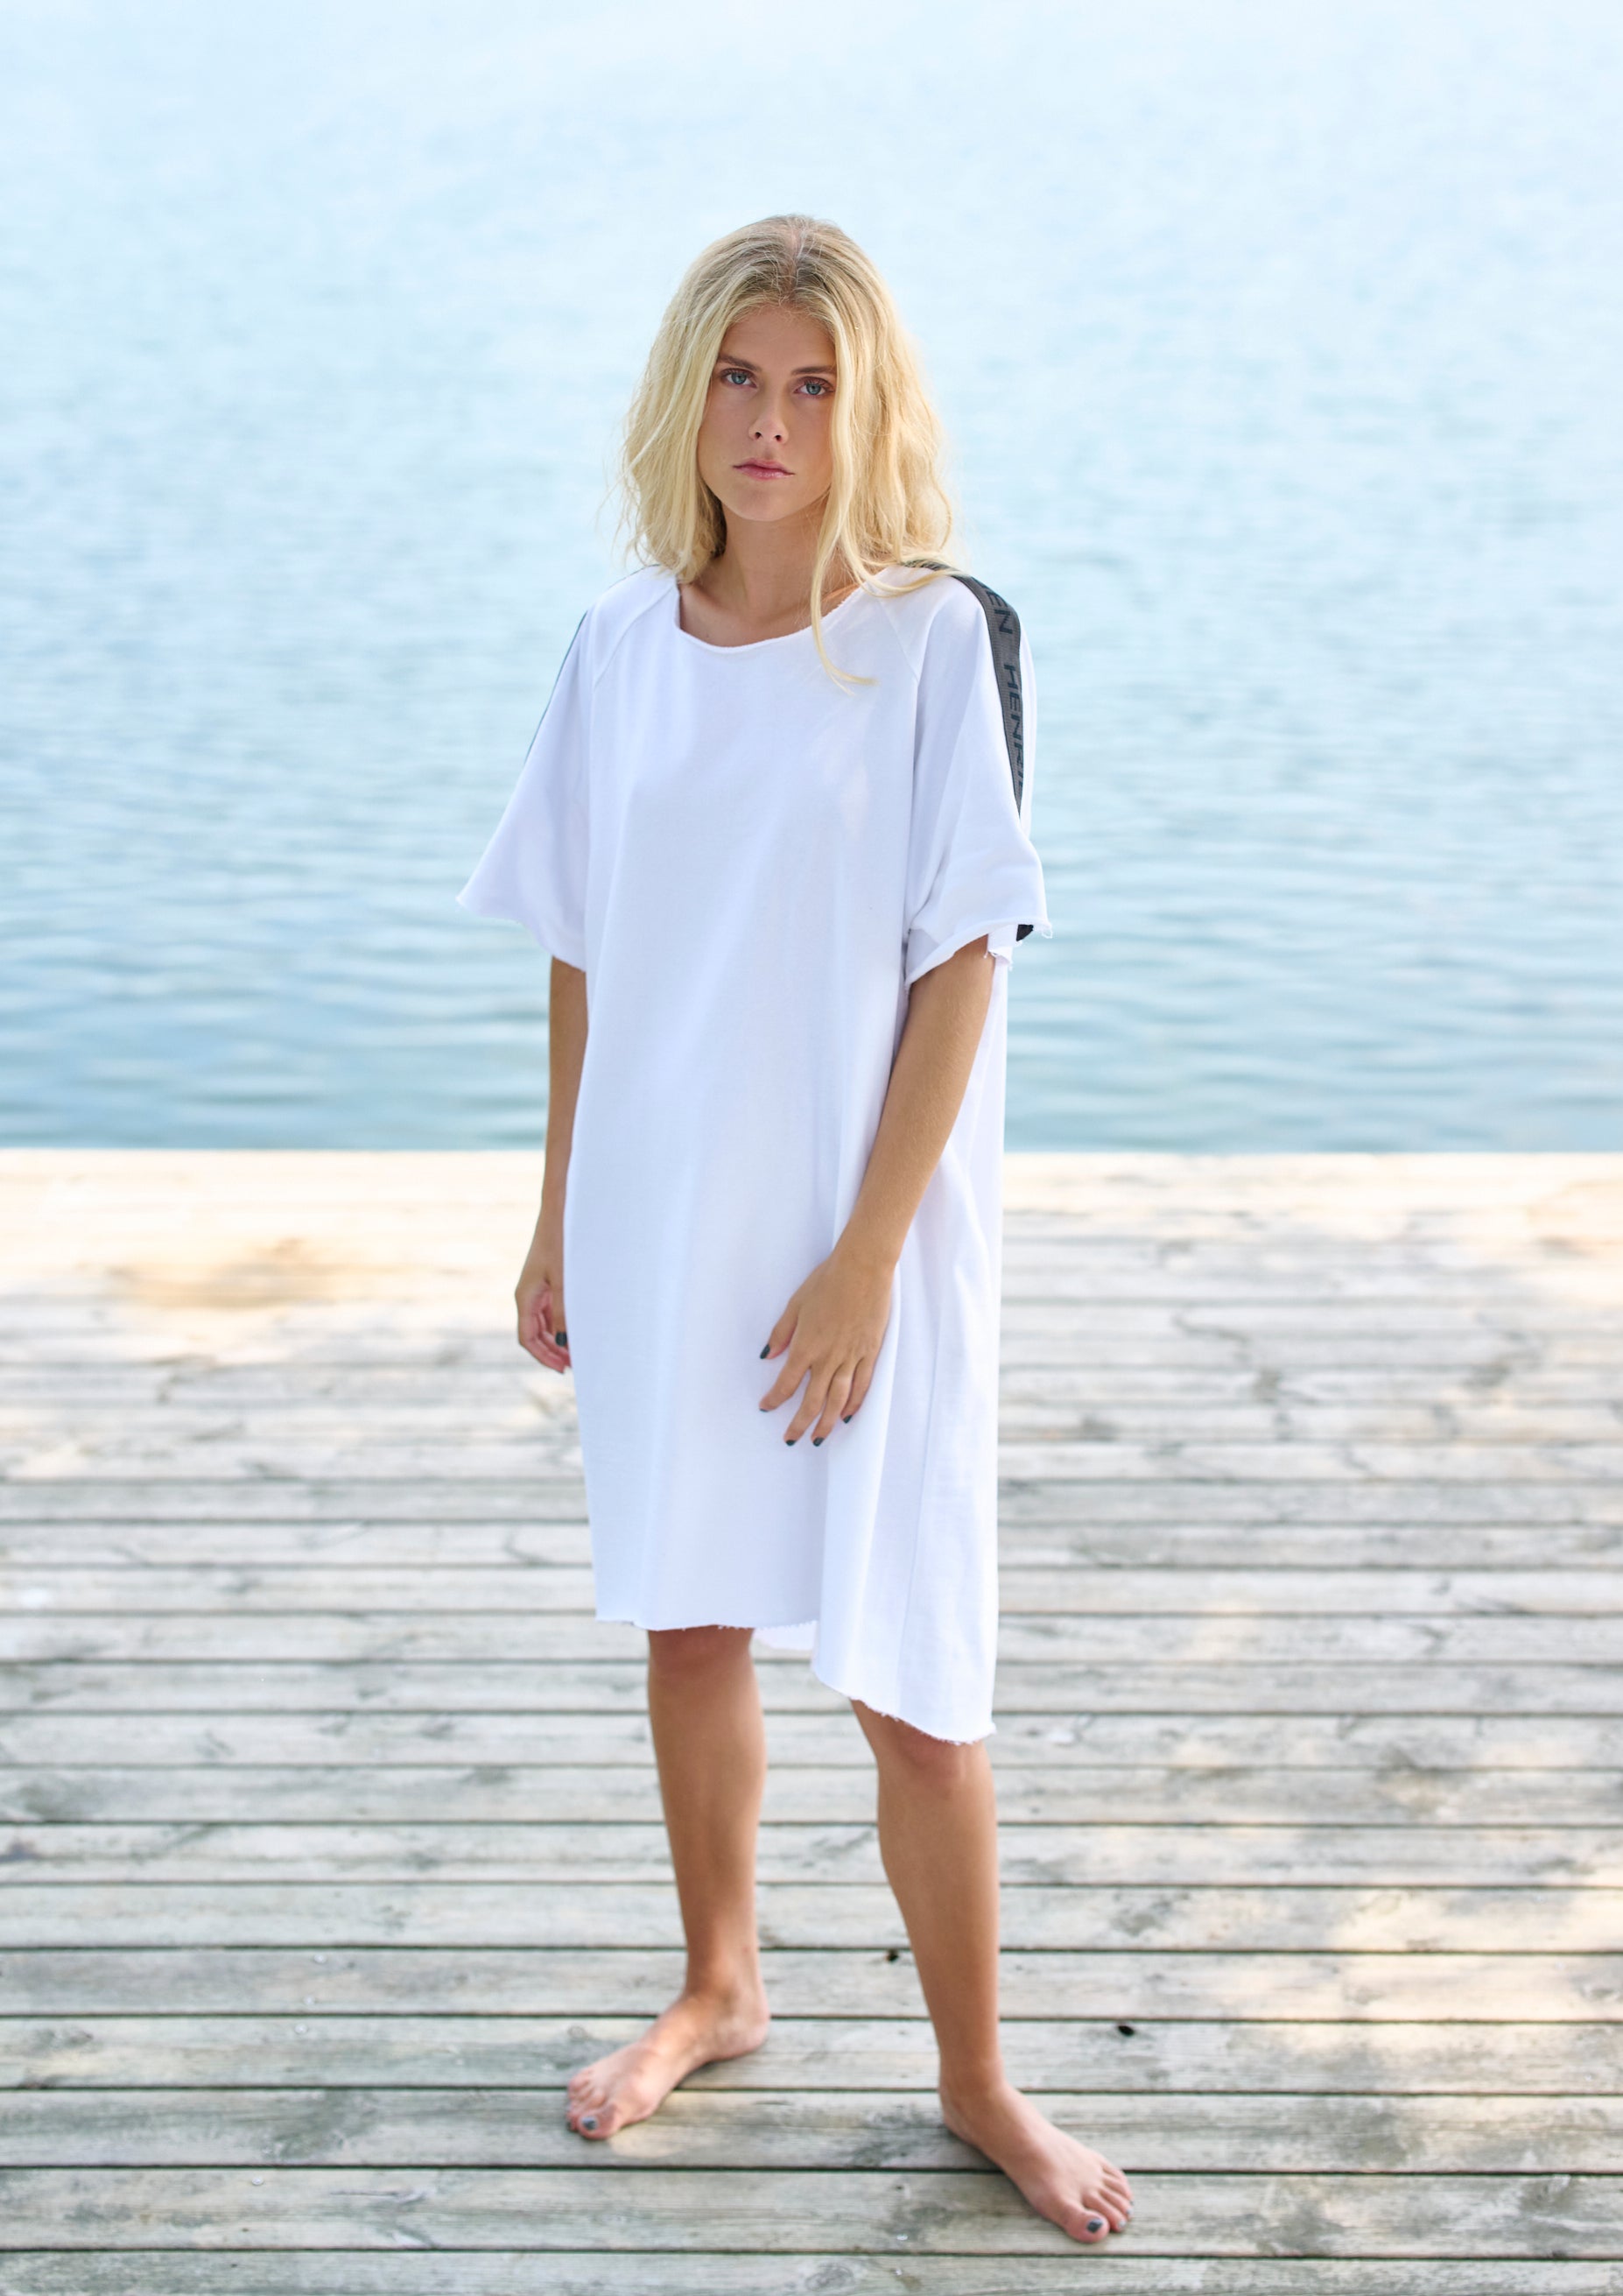 HENRIETTE STEFFENSEN COPENHAGEN DRESS - 73401 DRESS cotton WHITE 816